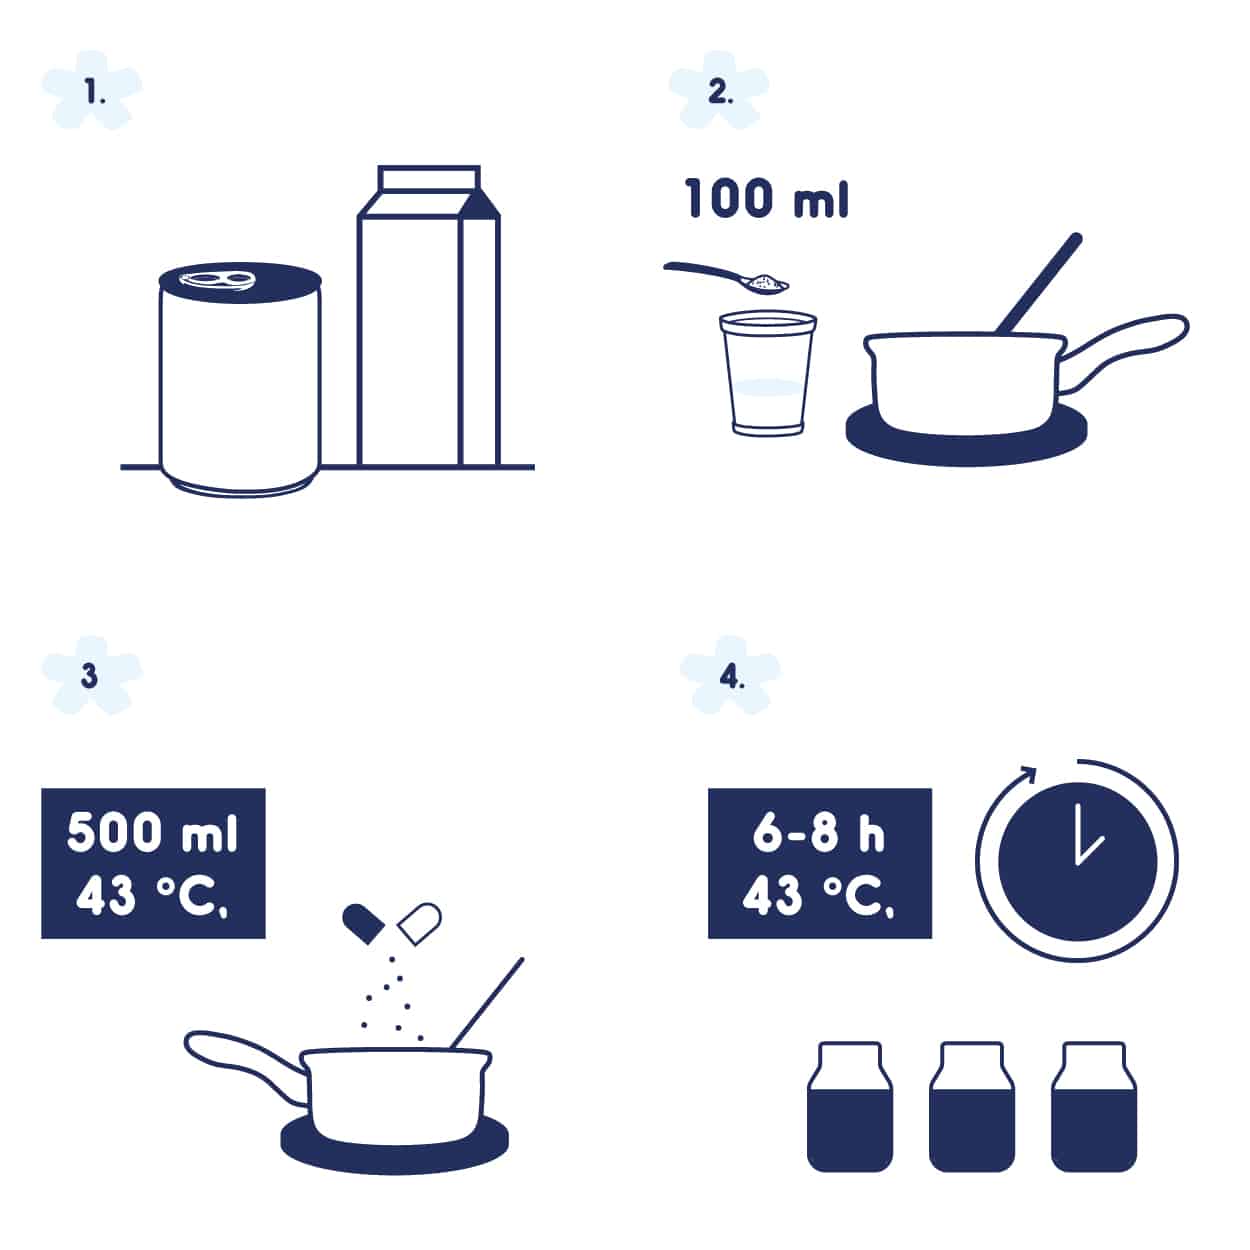 YOGUT WISSEN | Informationen zu Joghurt und Kefir aus Milch und Pflanzendrinks